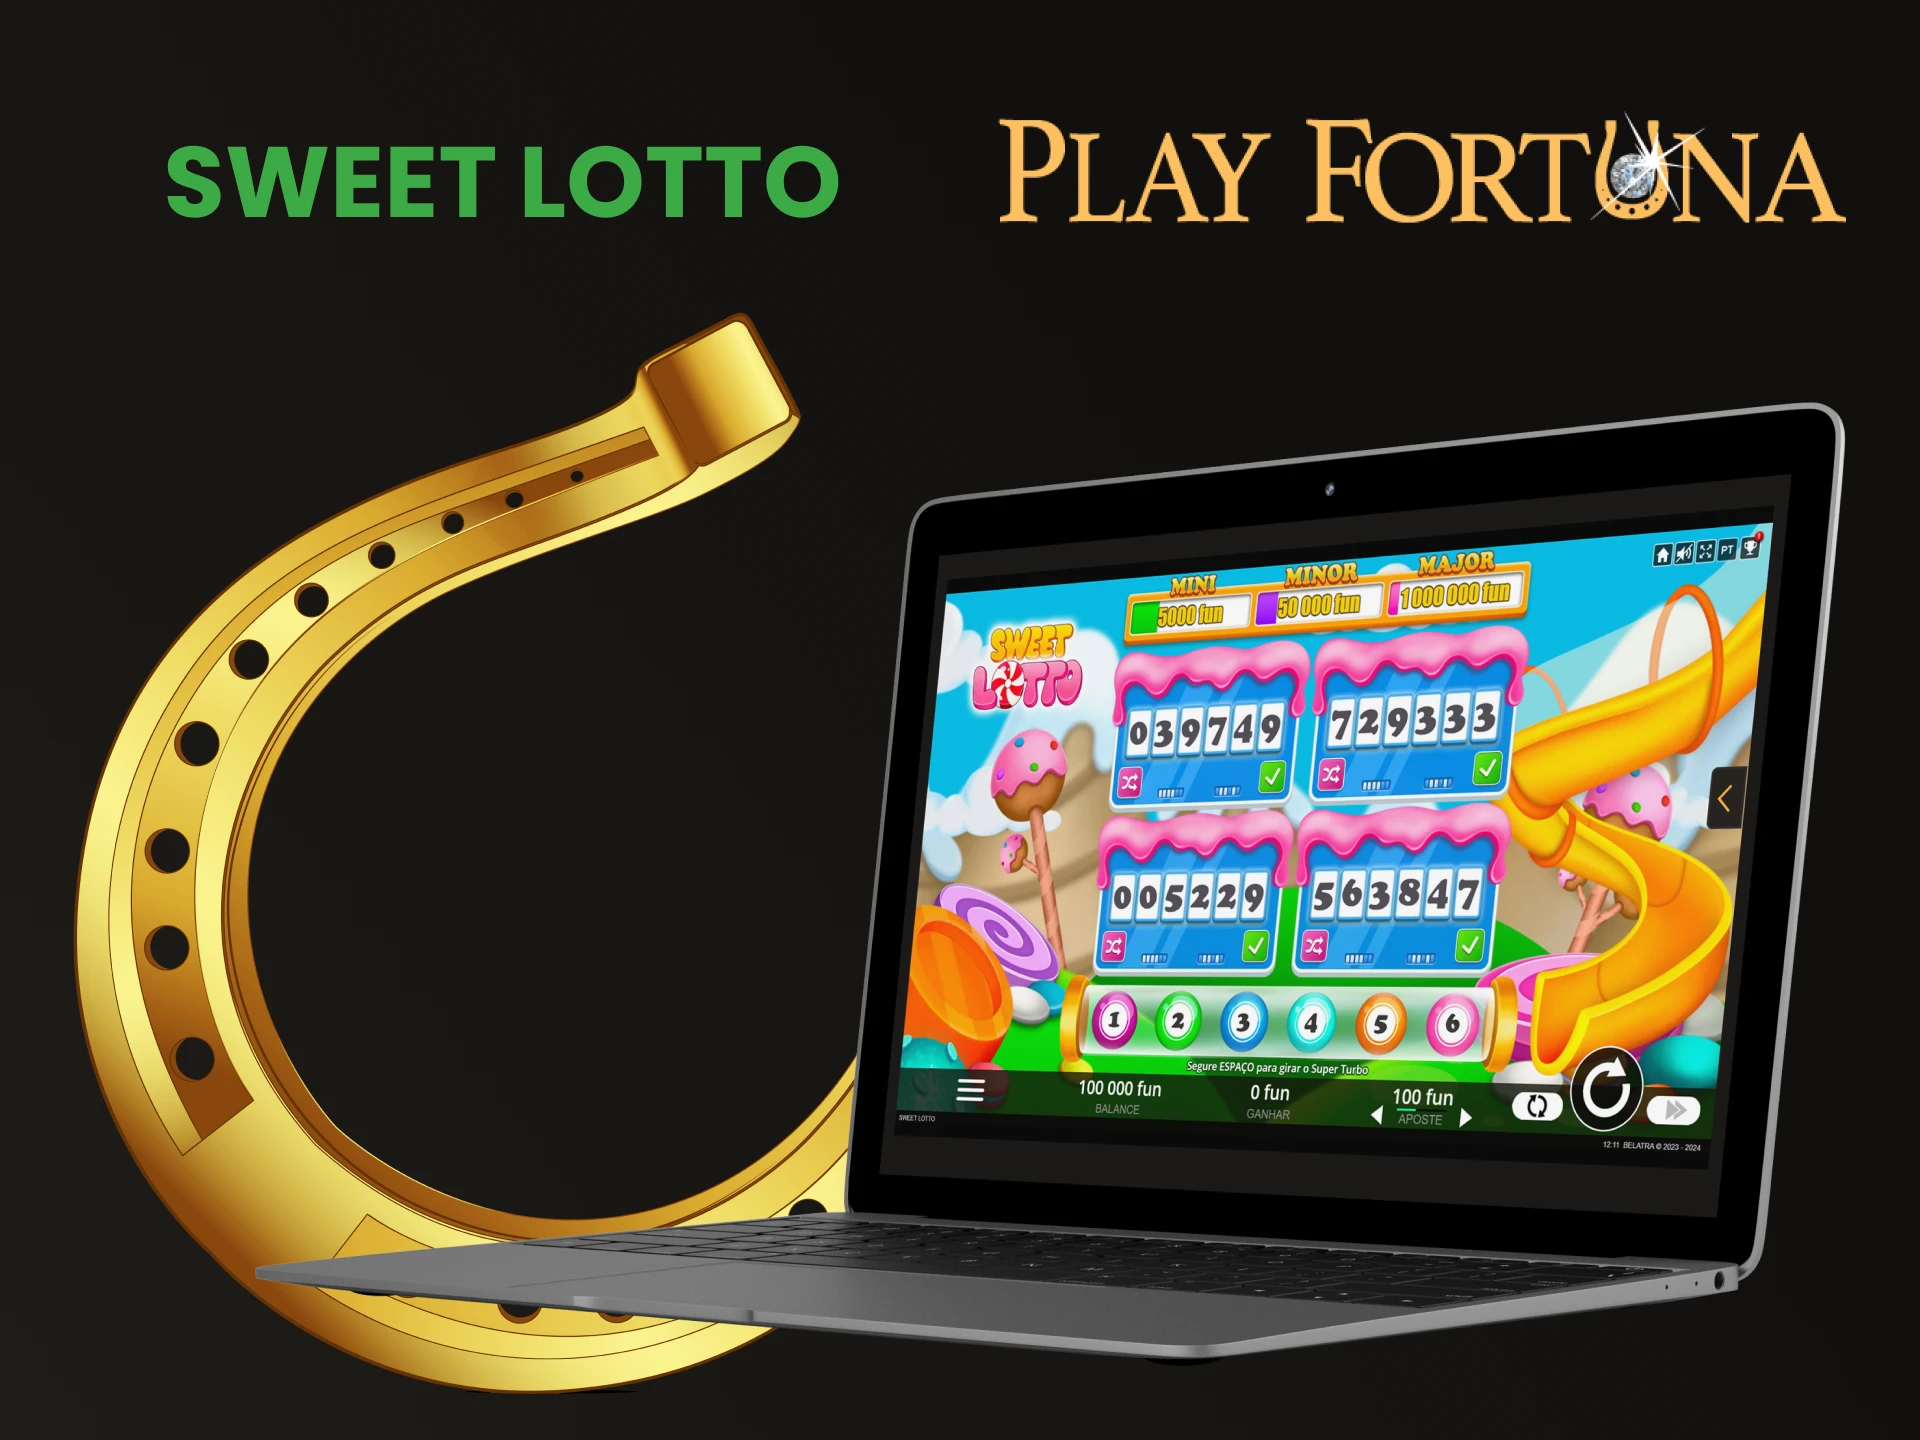 Jogue Sweet Lotto na seção de loteria do Play Fortuna.